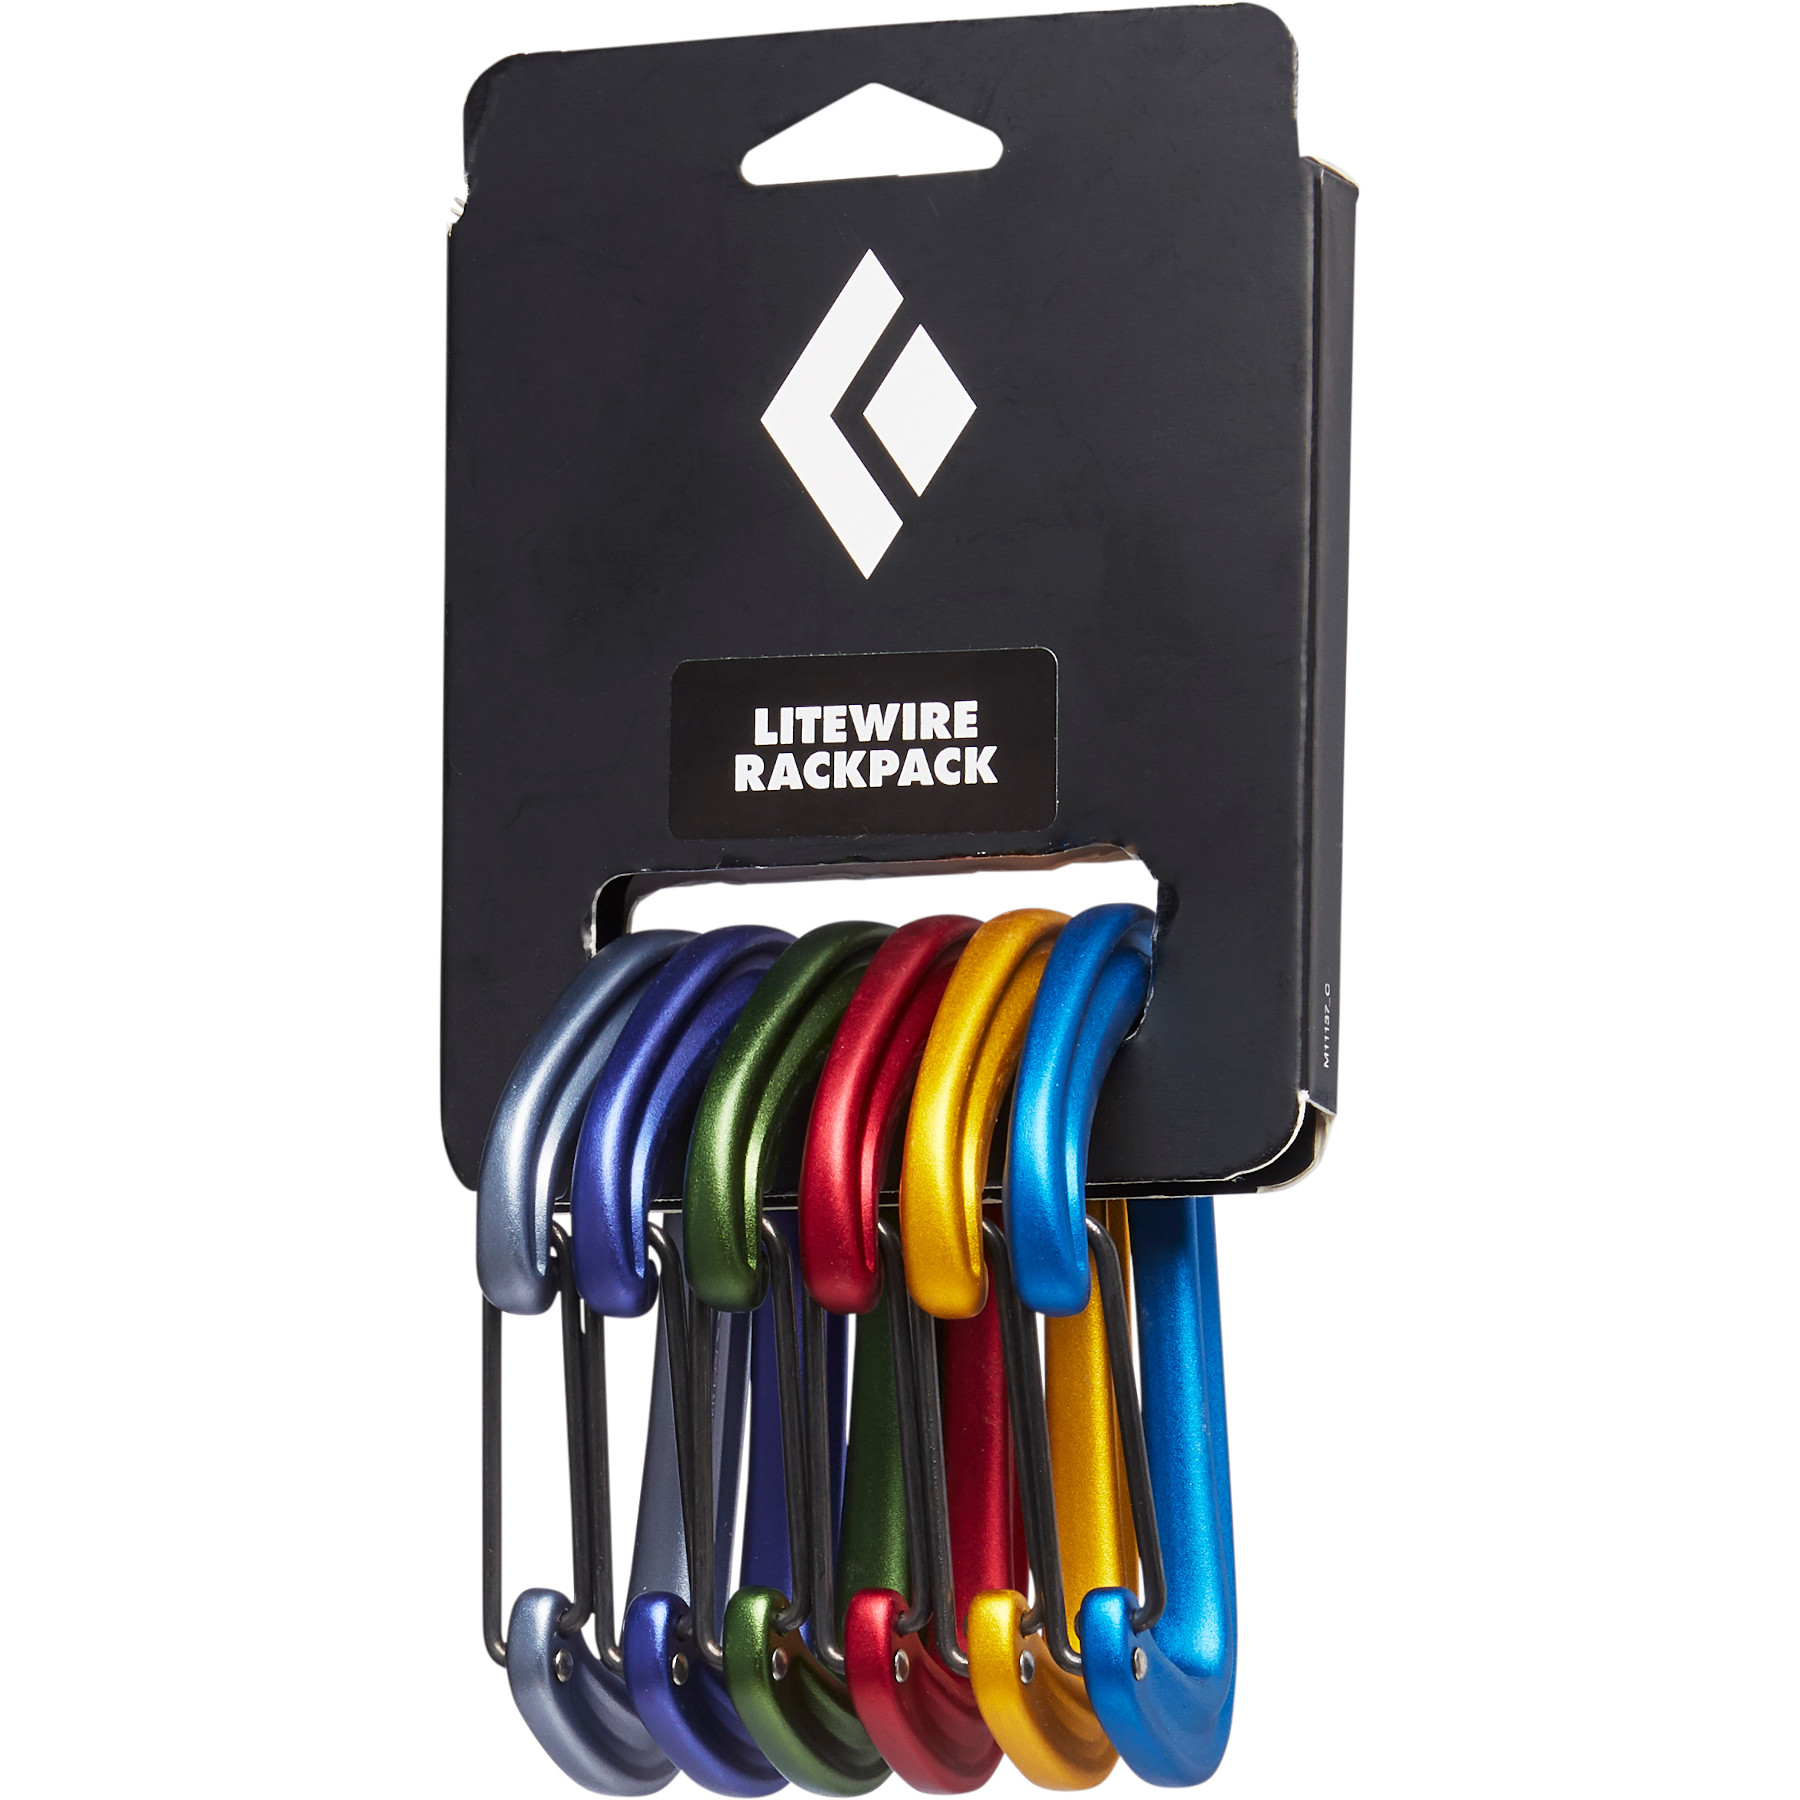 Productfoto van Black Diamond Litewire Rackpack Carabiners